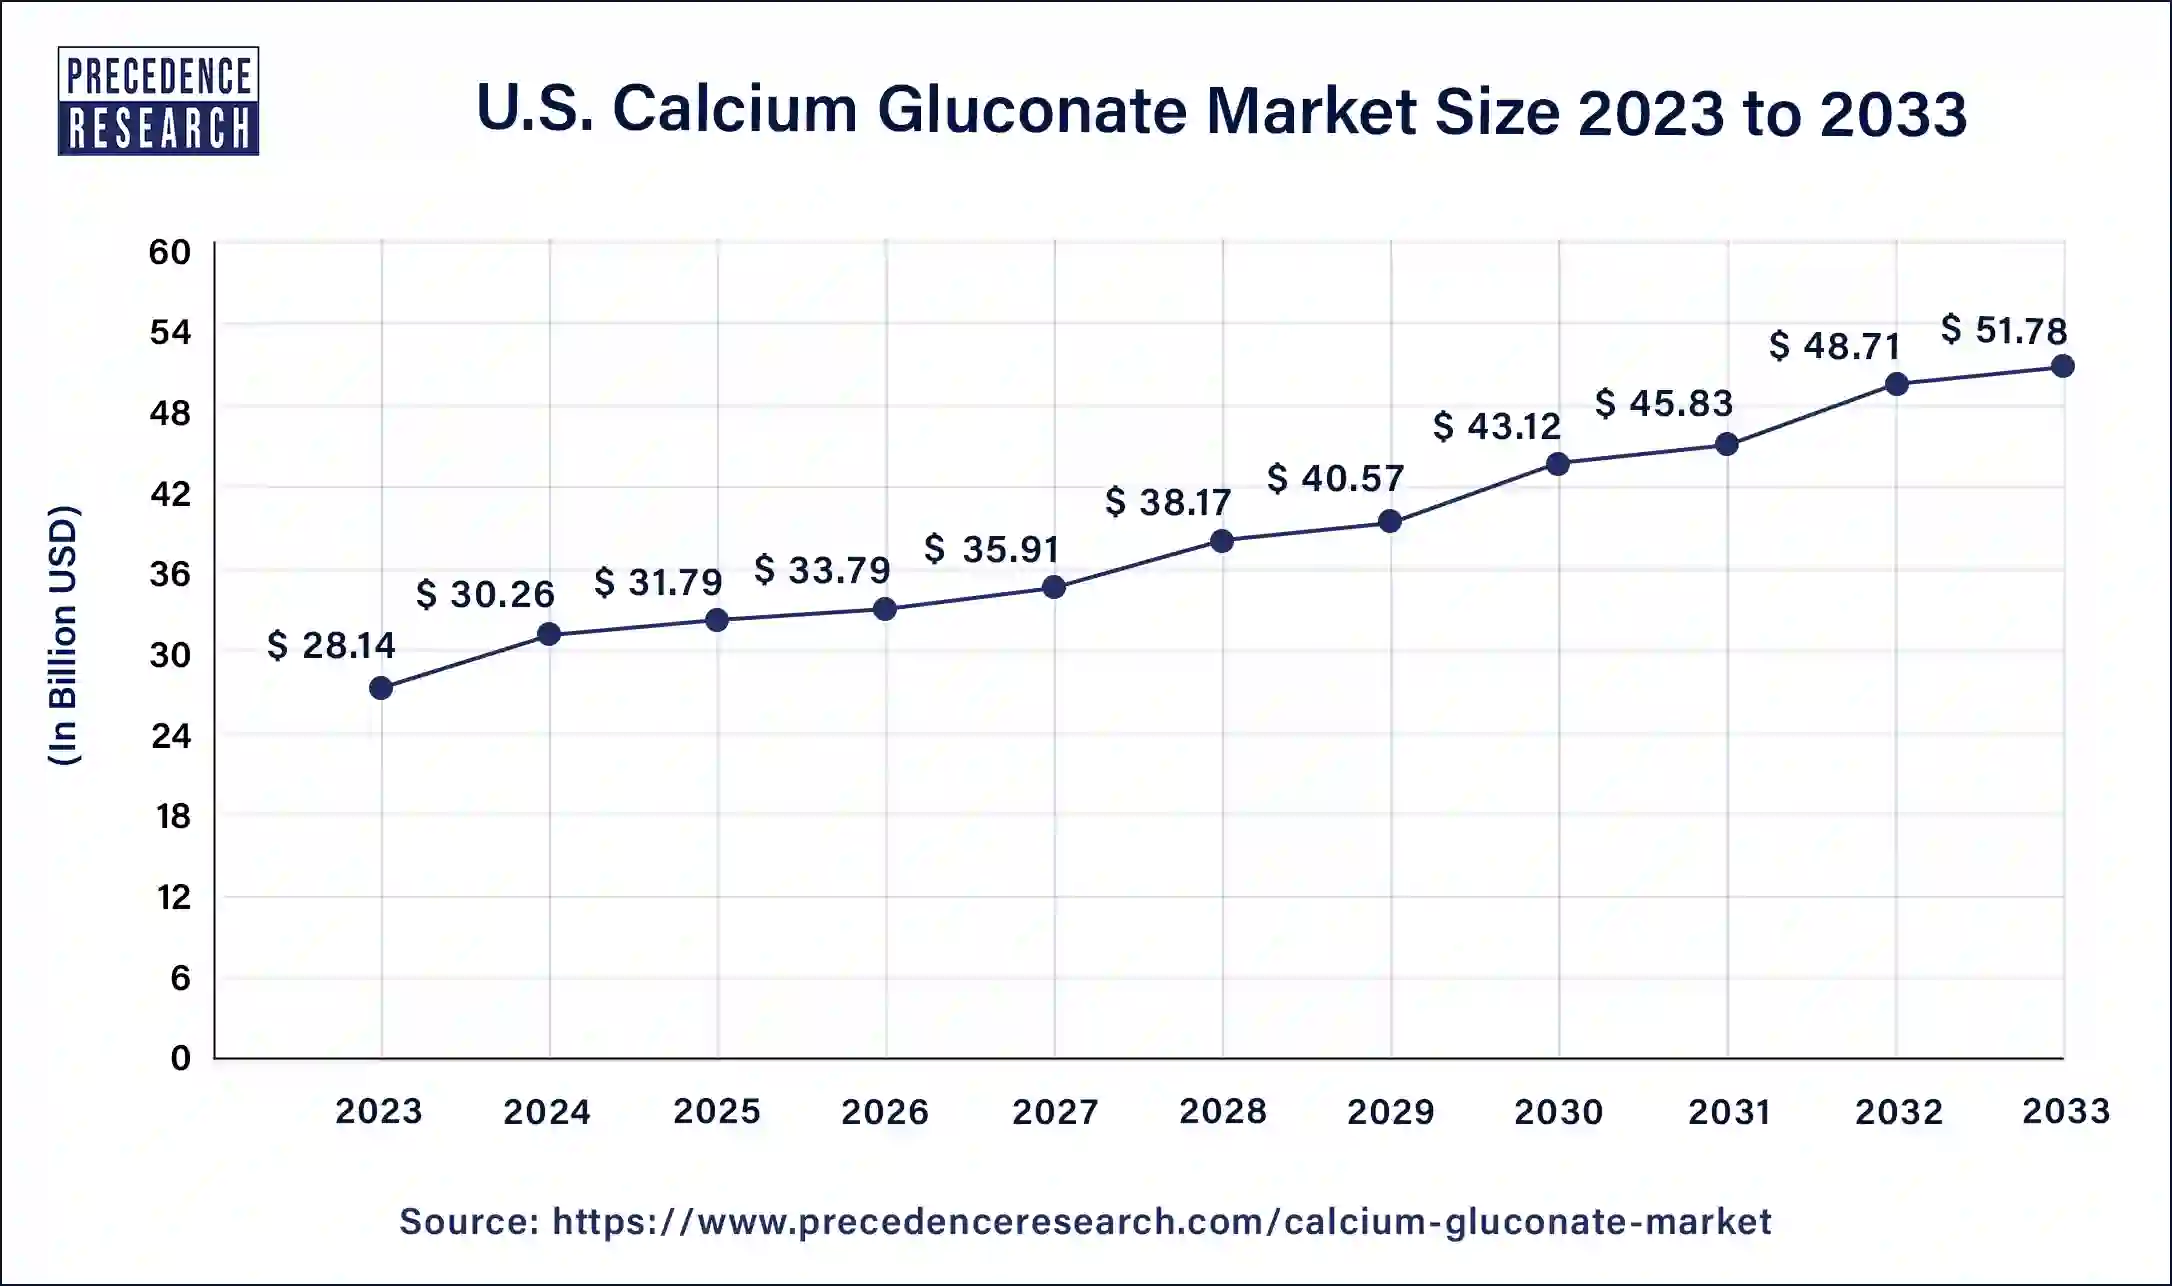 U.S. Calcium Gluconate Market Size 2024 to 2033